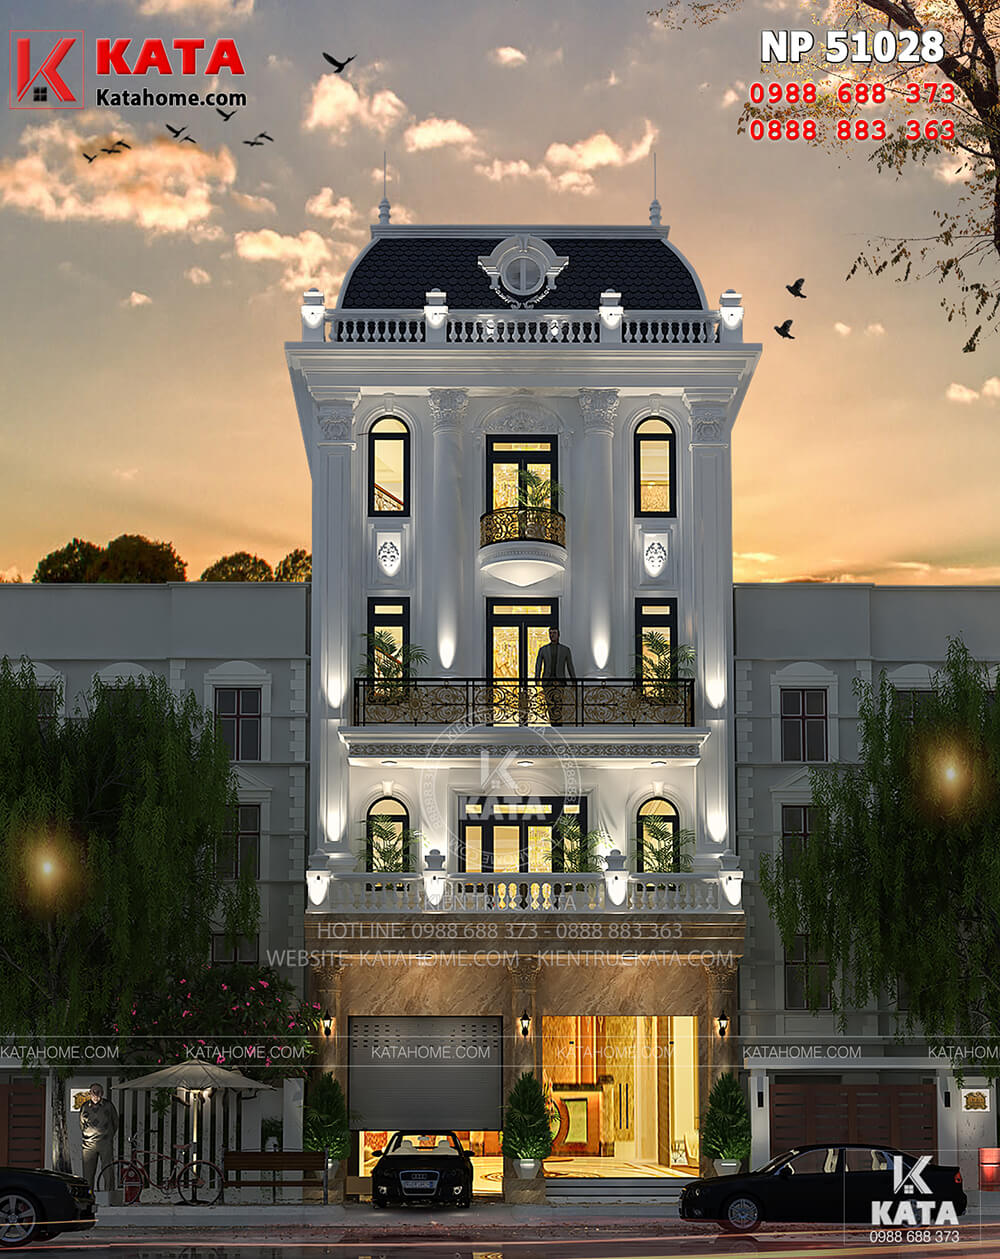 Thiết kế nhà ở và kinh doanh khách sạn tại Hà Nội 5 tầng– Mã số: NP 51028